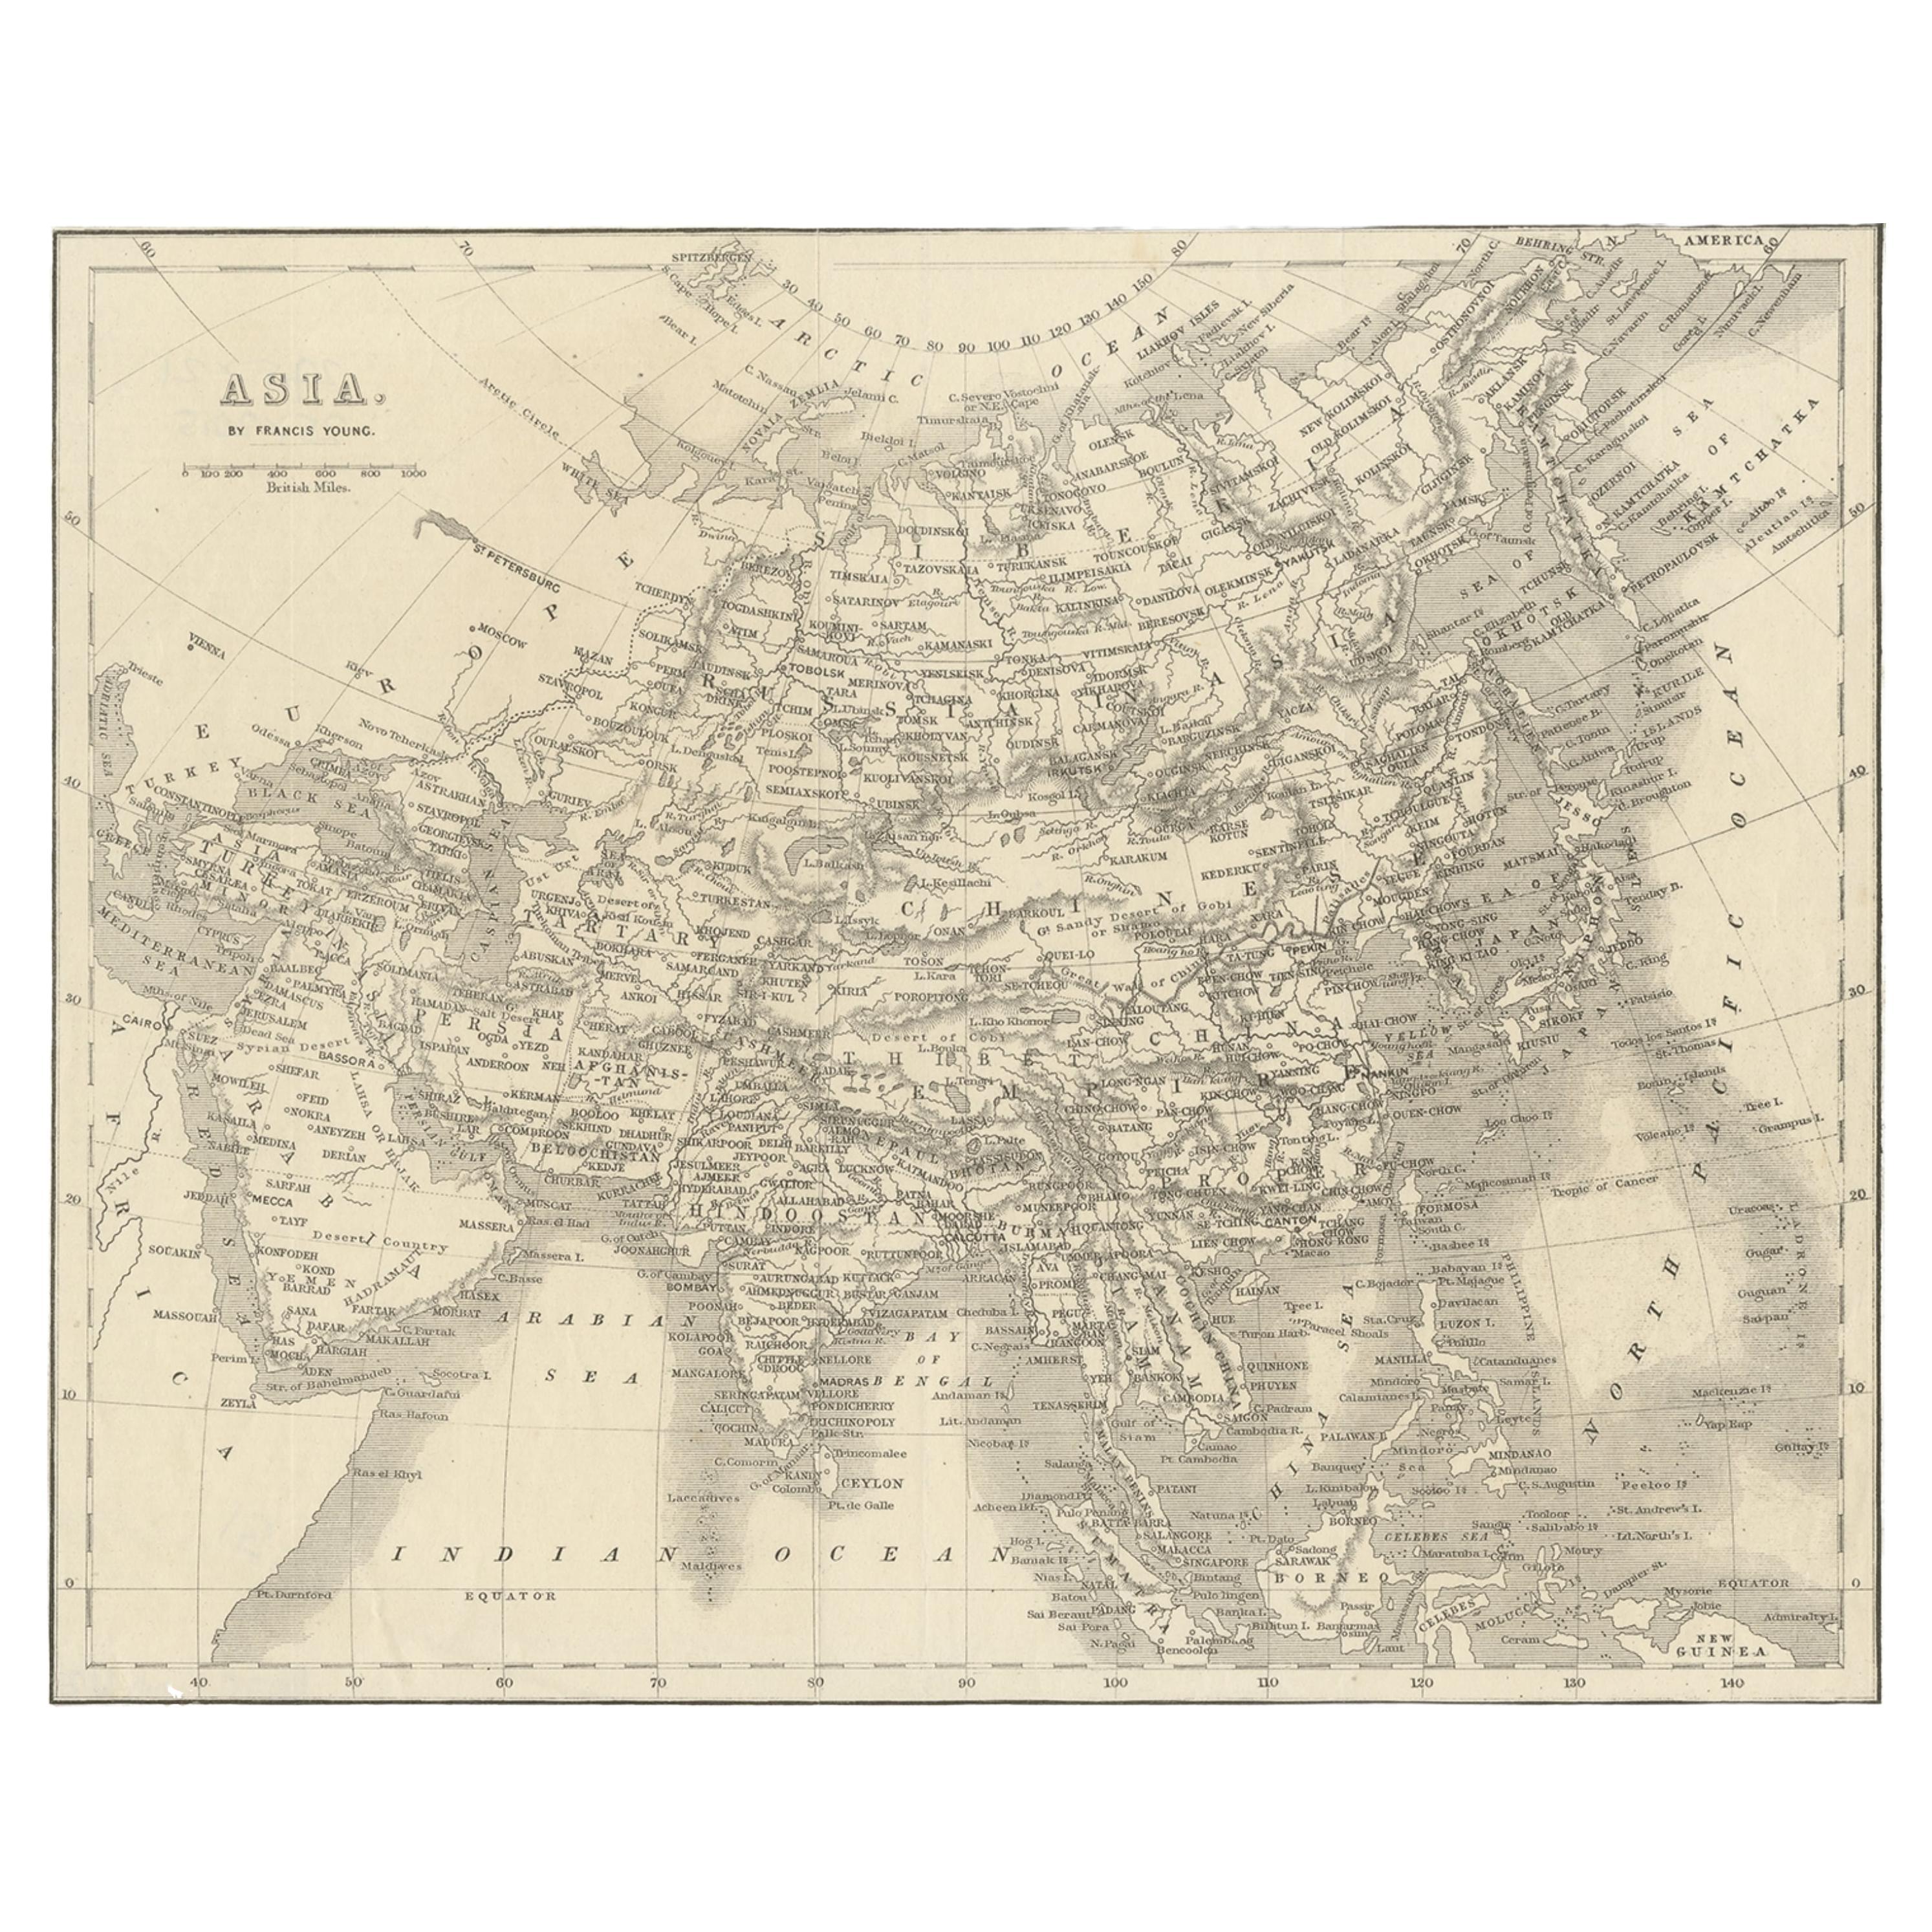 Carte ancienne d'Asie par Young, vers 1860